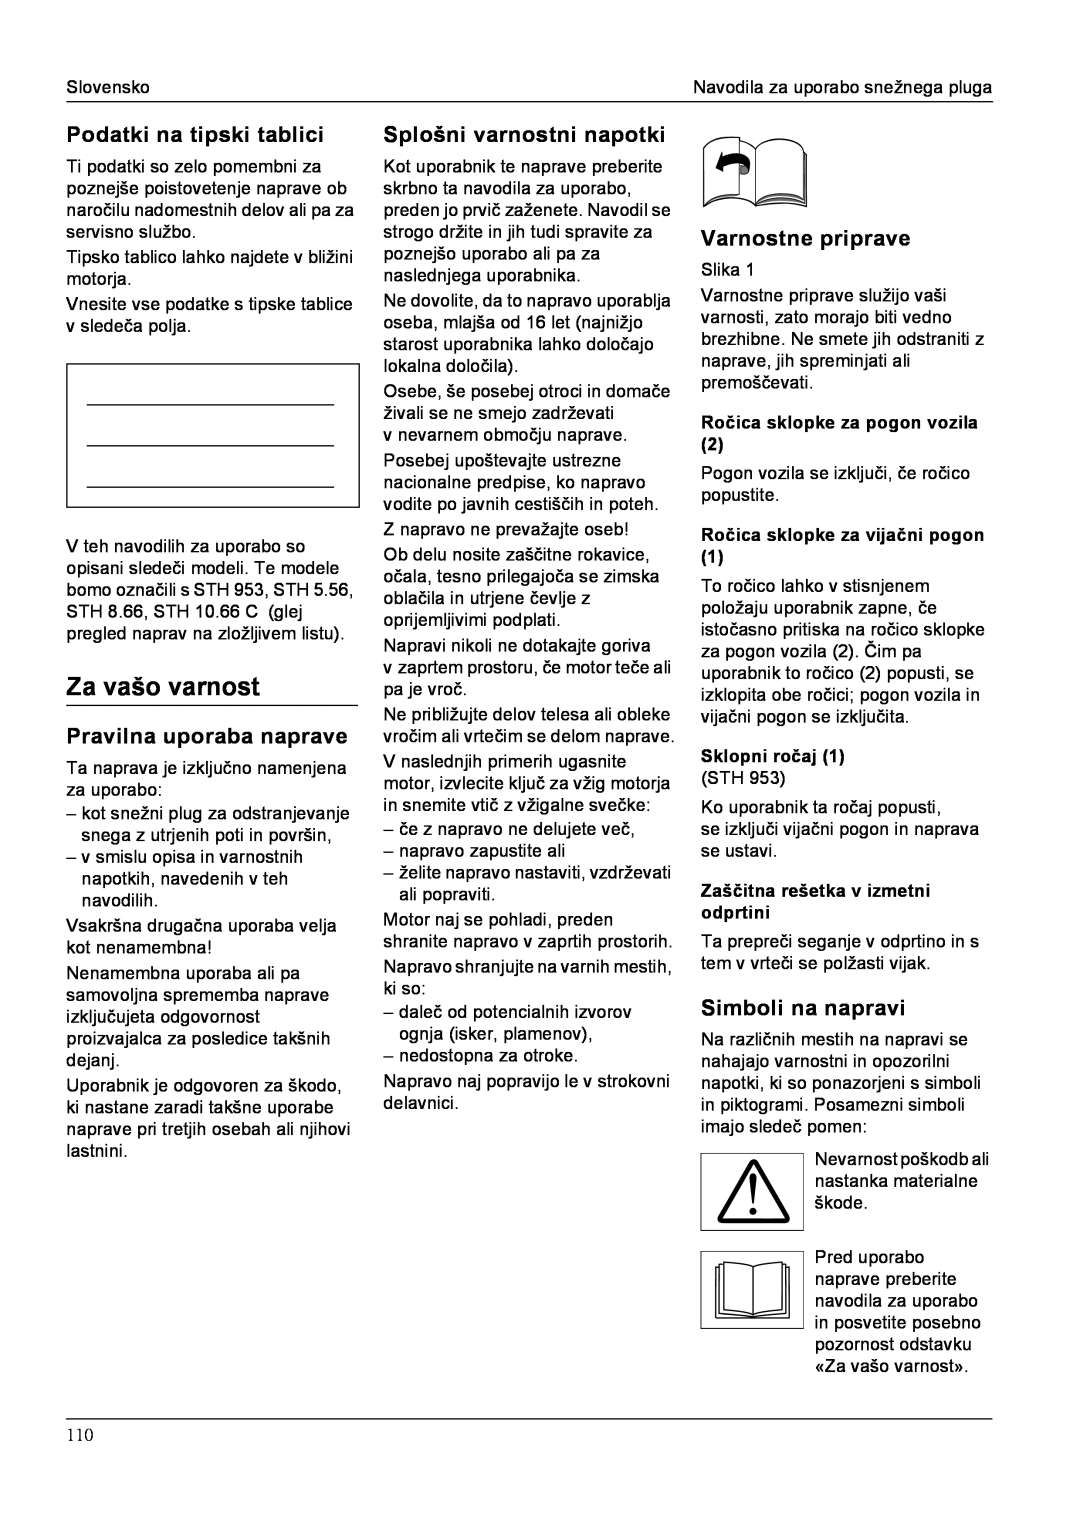 Karcher STH 10.66 C manual Za vašo varnost, Podatki na tipski tablici, Pravilna uporaba naprave, Splošni varnostni napotki 